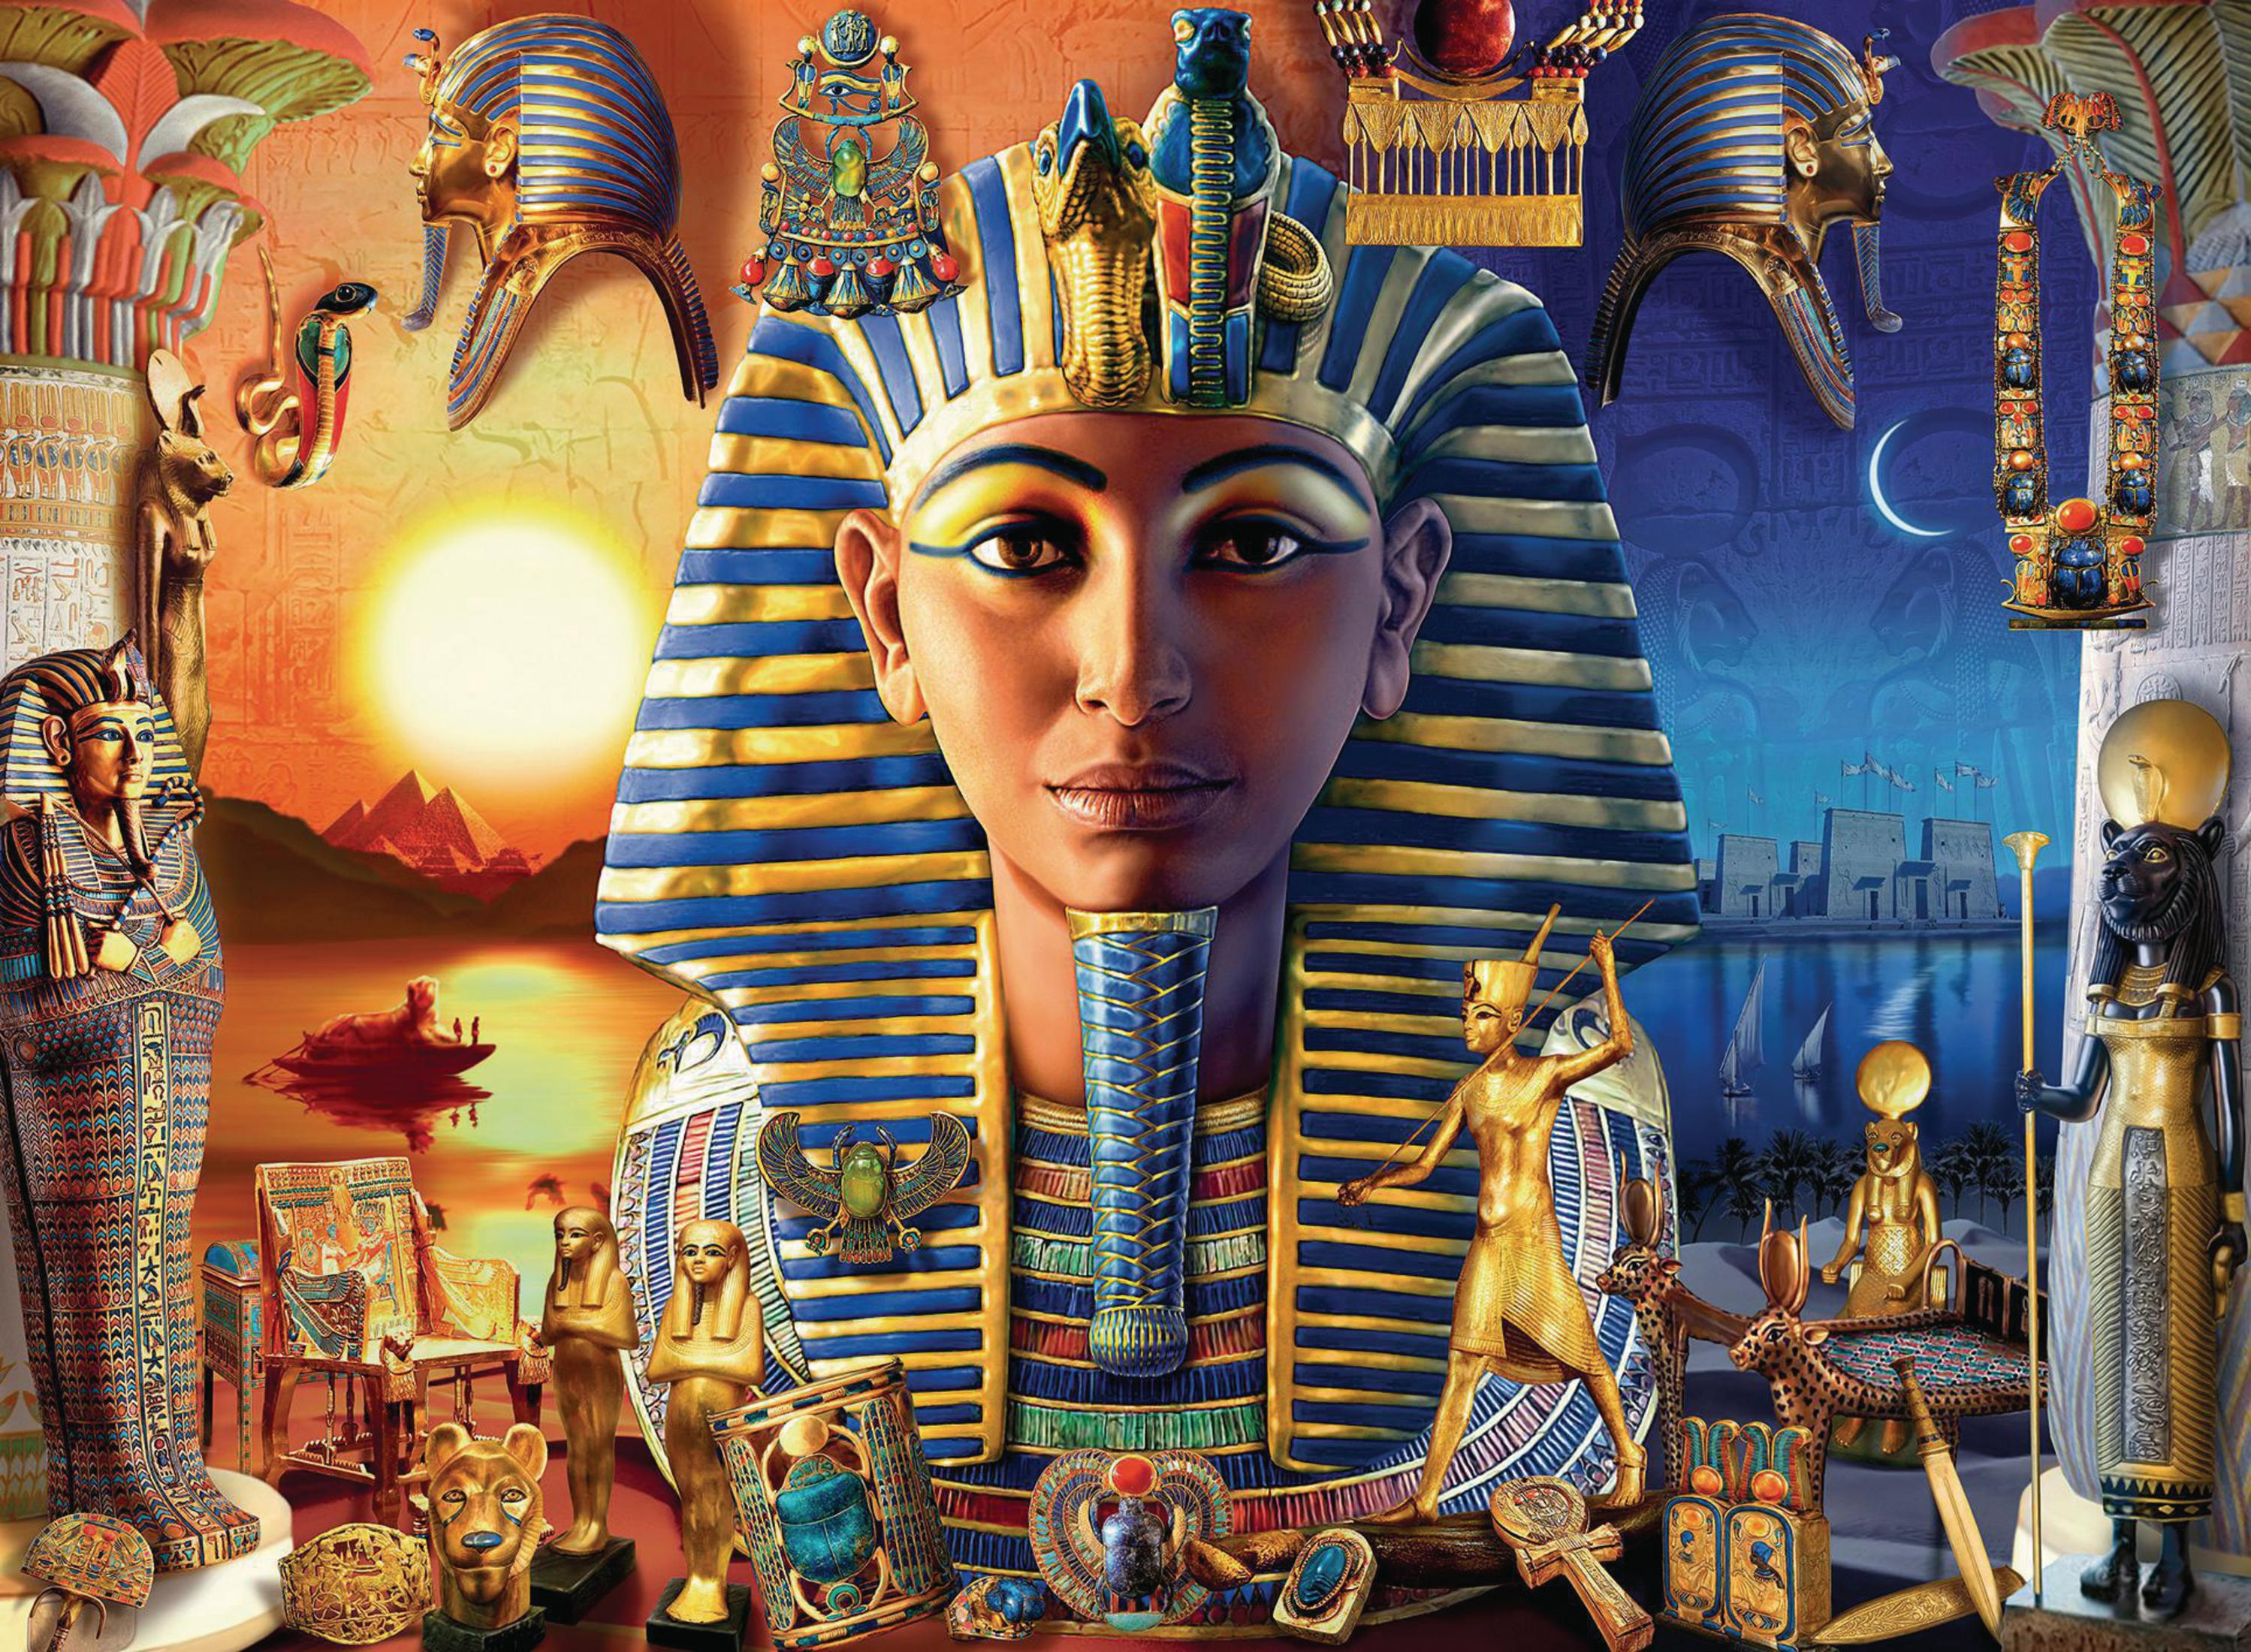 ÄGYPTEN Puzzle ALTEN IM 12953 RAVENSBURGER